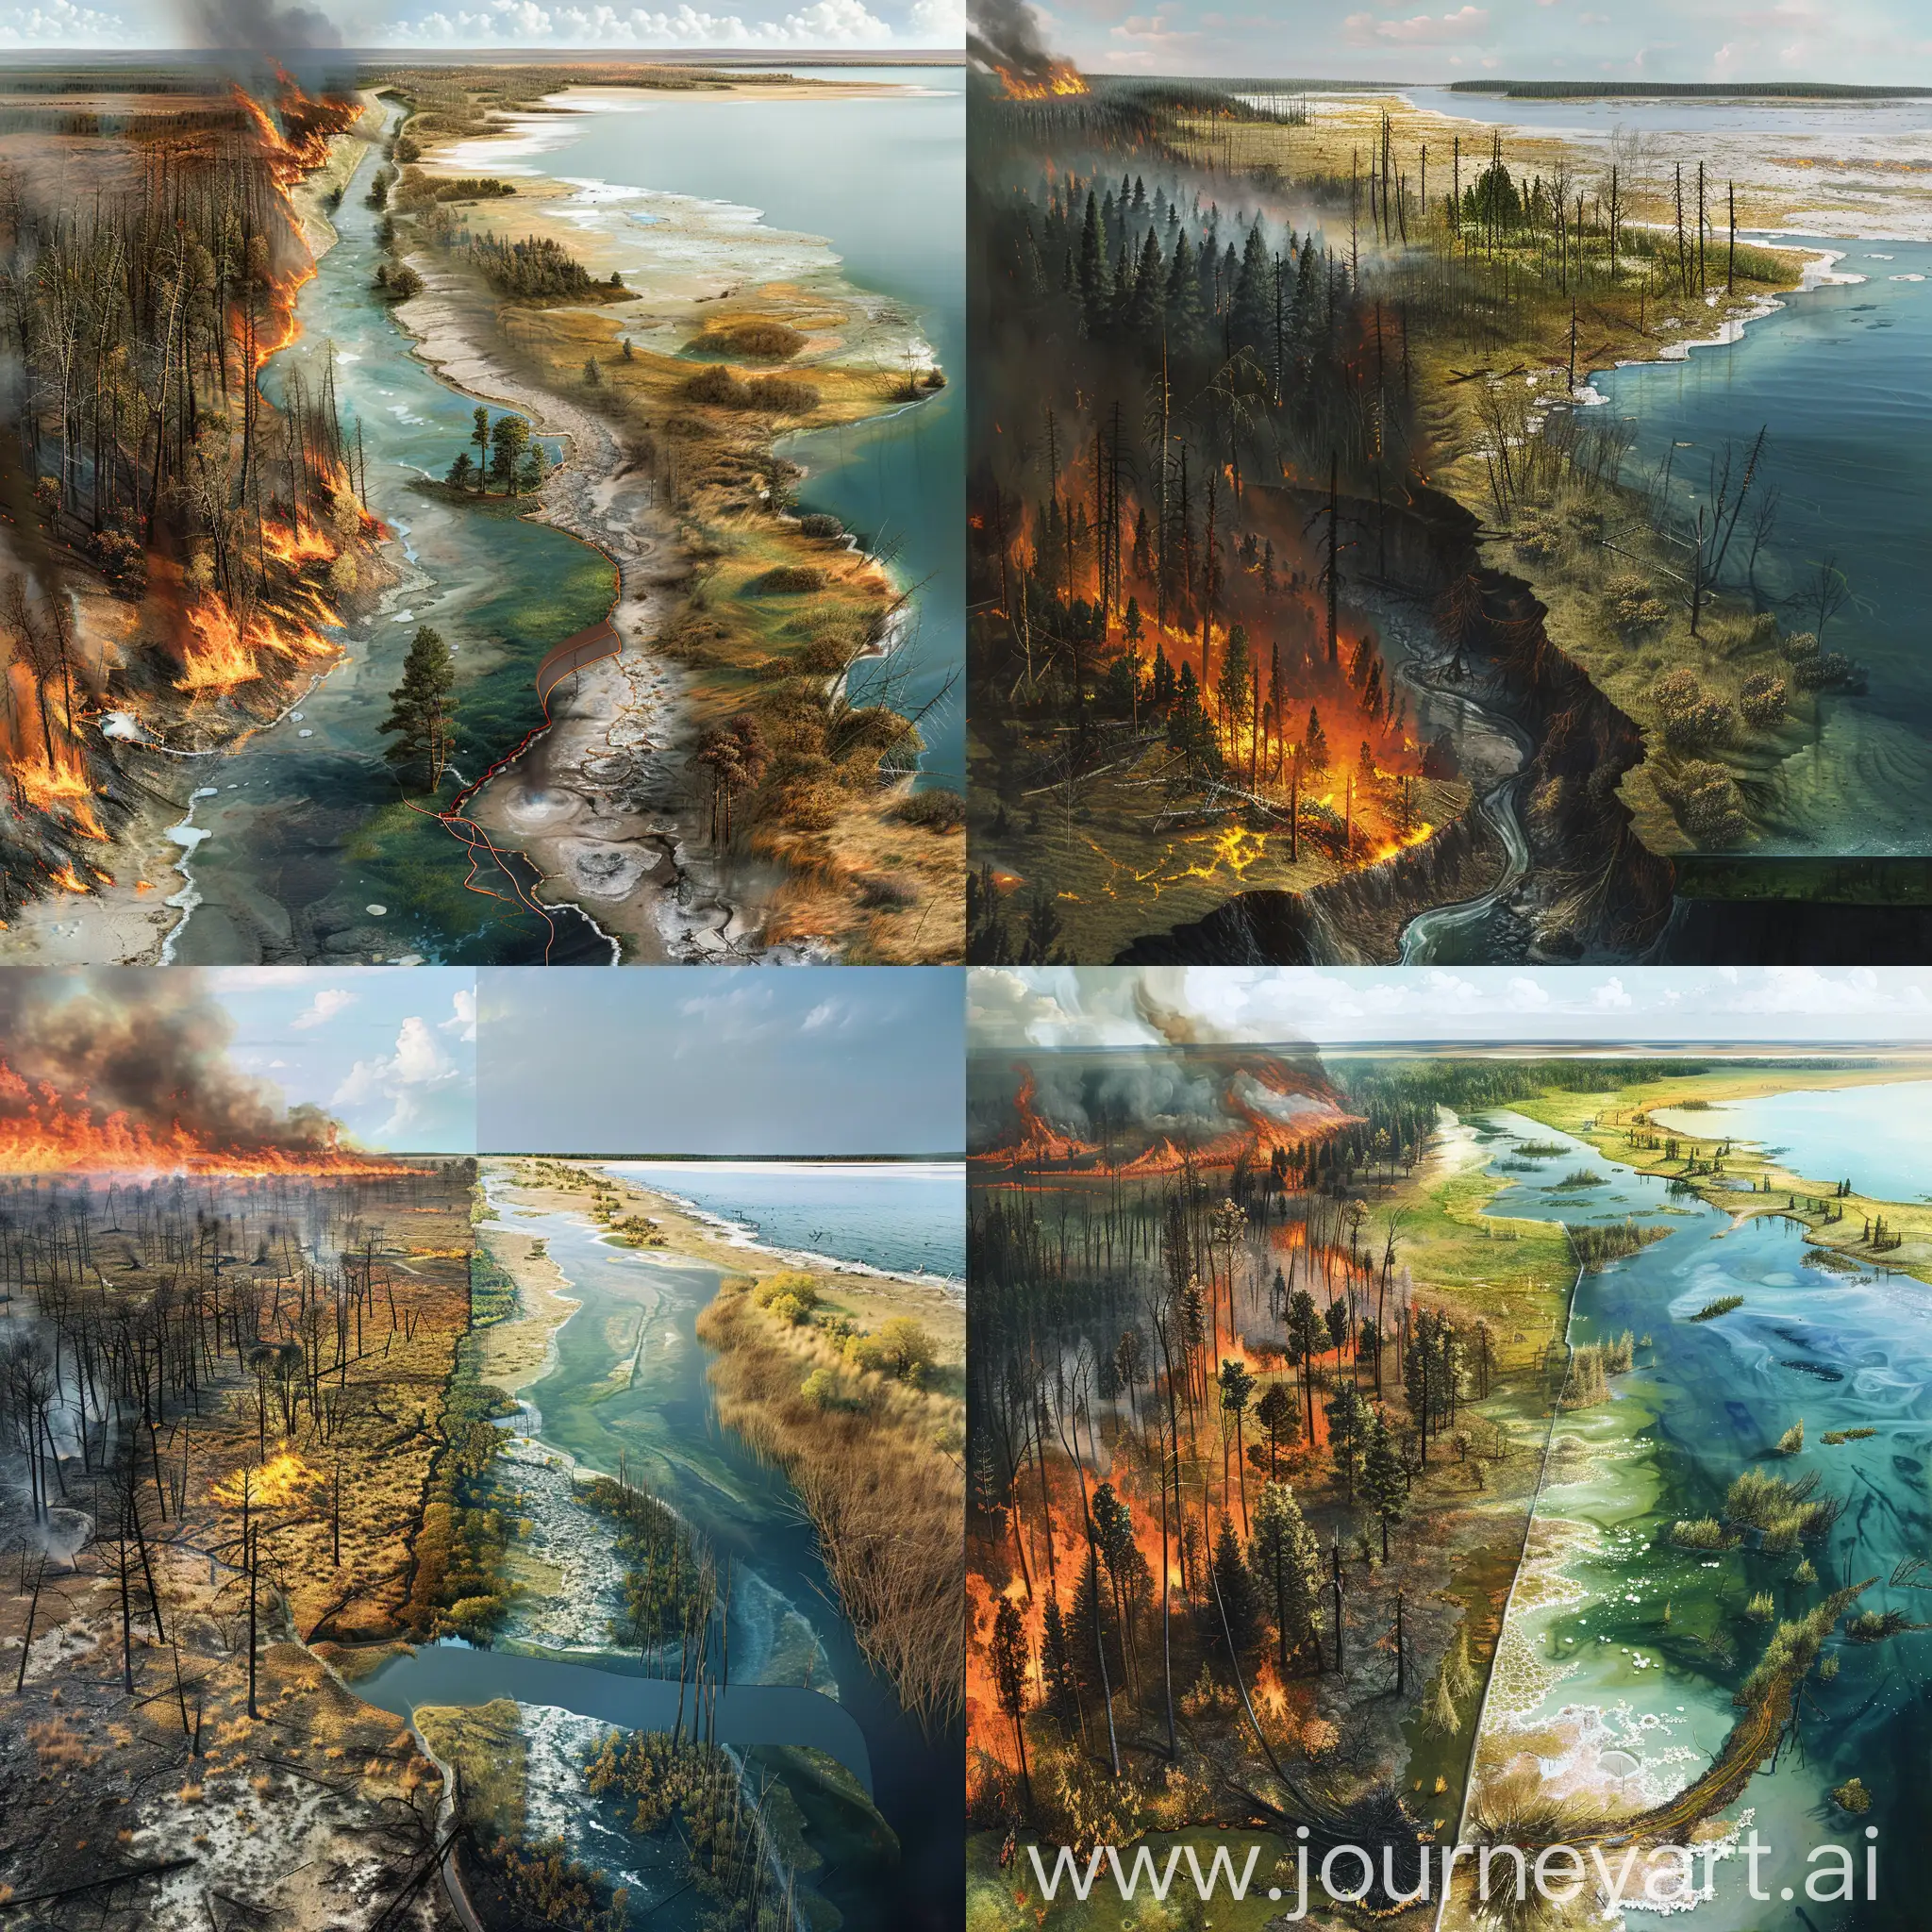 画面的左边是大片森林，森林正在发生有森林火灾和并且存在烧焦的树木，森林右边缘是小面积的草地和灌木丛，往右是一大片湖泊，湖岸边上有火灾过后烧焦的树木，画面中存在一条横穿发生火灾的森林与盐碱地的河流并且汇入画面右边的湖泊，河流同时将火灾后烧焦树木所产生的污染物带进湖泊中，画面中湖泊占大部分区域，以近乎于平视的斜视的视角看这场景作画，湖泊中有污染痕迹，并且在图片下方十分之一的画面为该地区的竖直剖面图，能表现湖泊的剖面图，画面的整体呈油画的风格，剖面图与整个画面的地理结构符合只占图片的十分之一。湖泊里无水生植物，画面更为简洁，